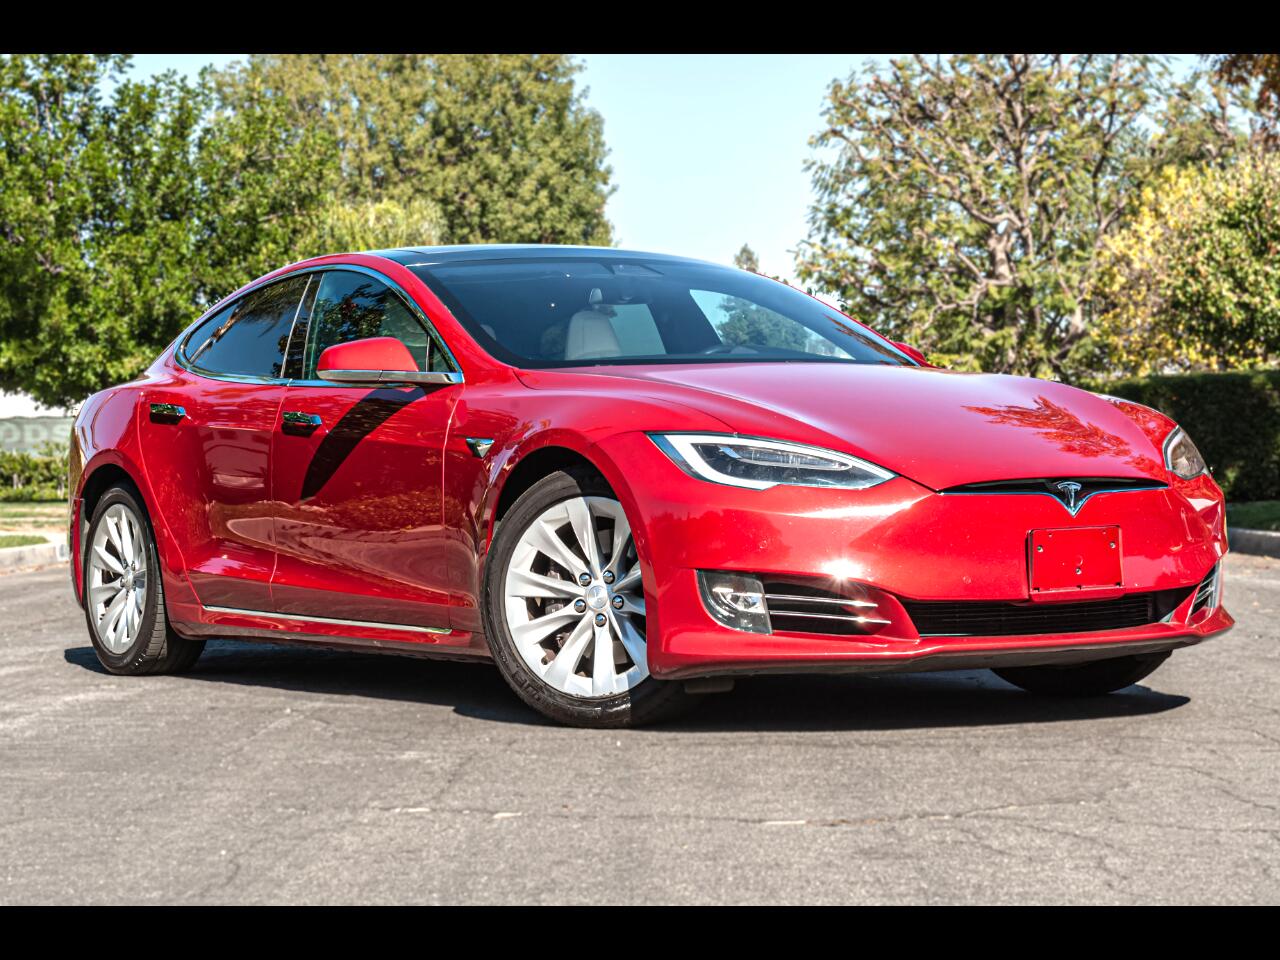 Tesla Model S 75 2017